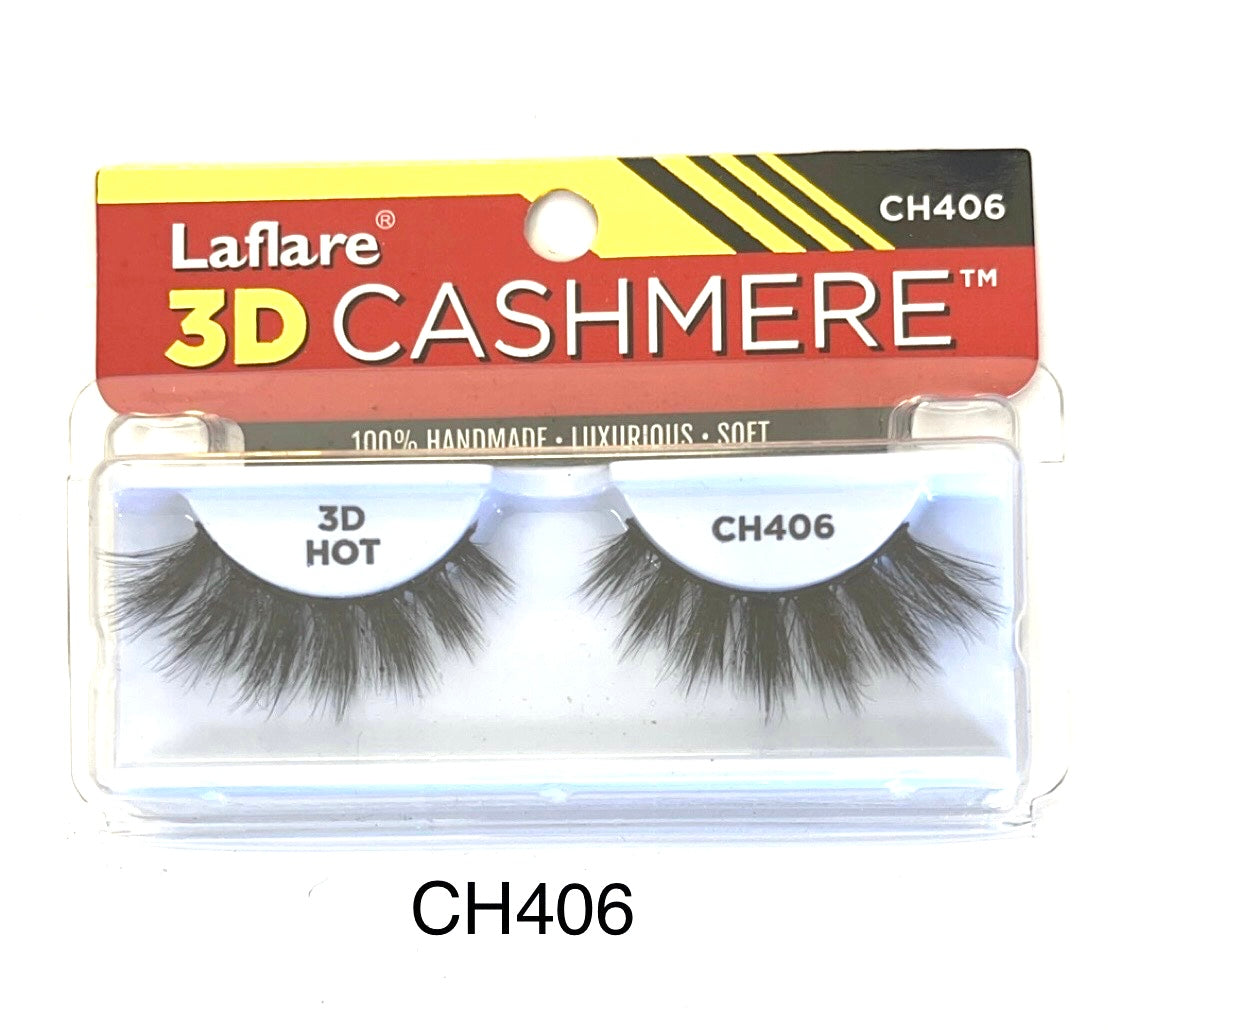 Laflare 3D Cashmere CH406